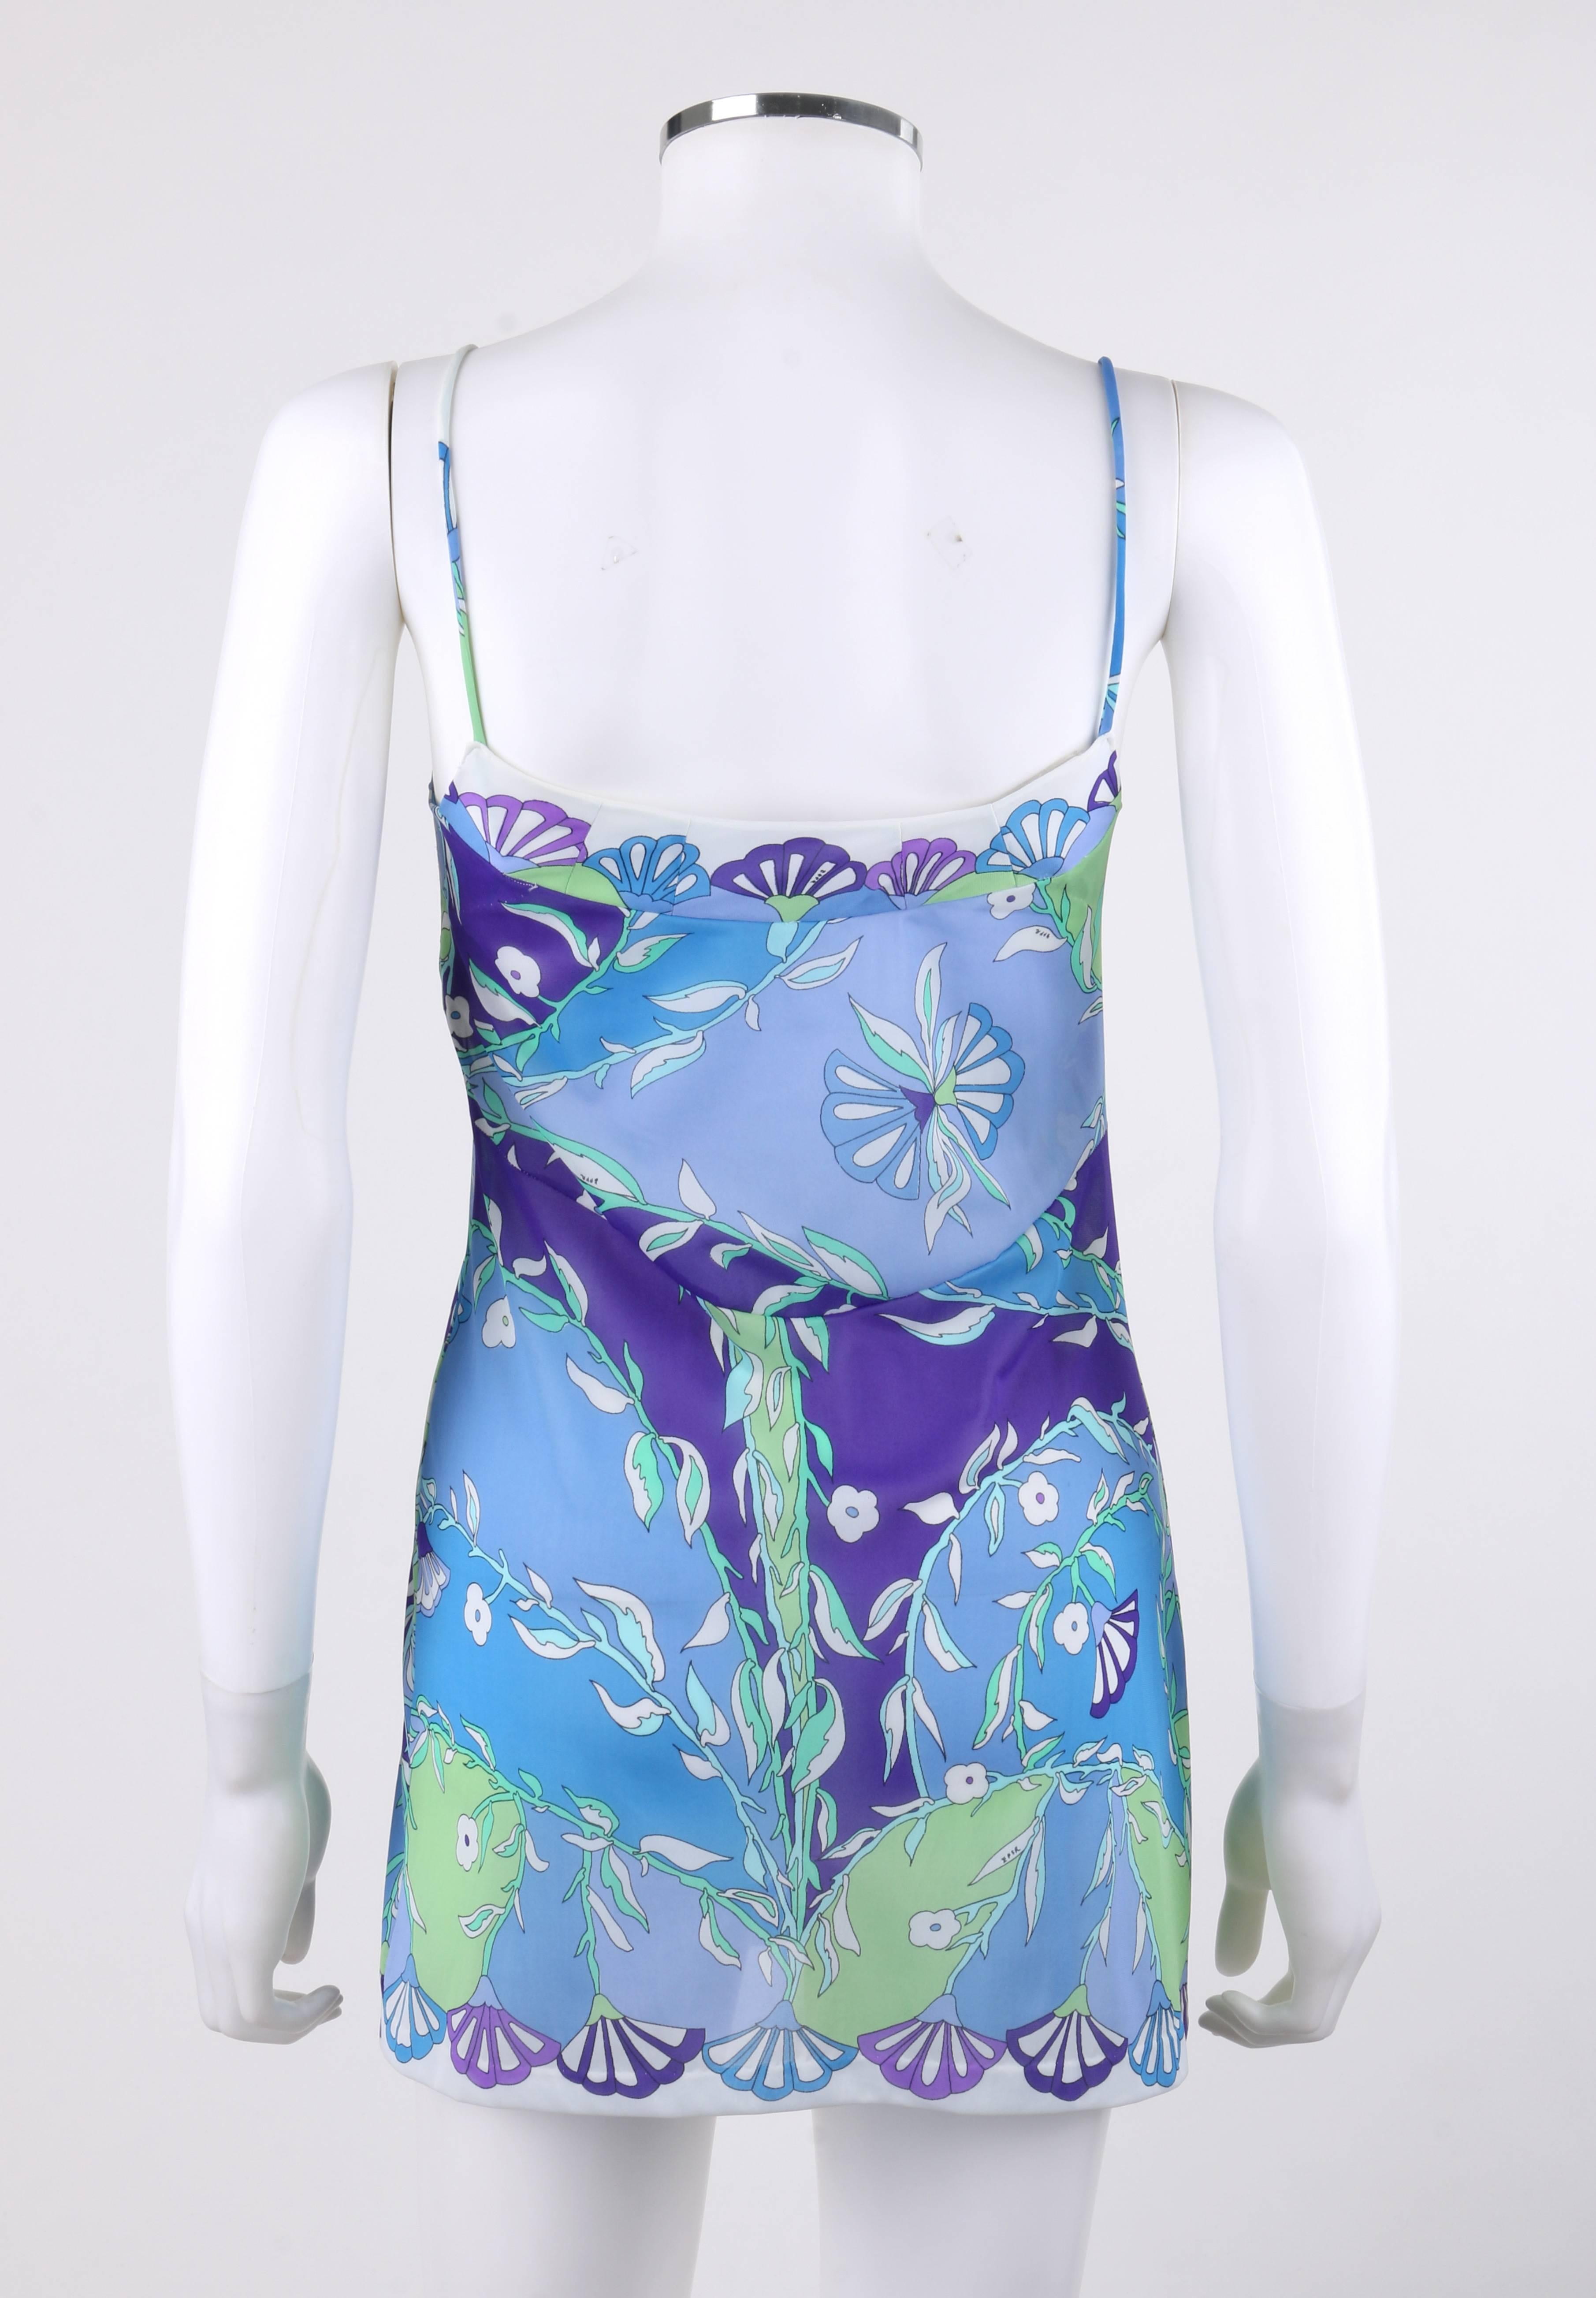 EMILIO PUCCI Formfit Rogers c.1960's 2 Pc Blue Floral Print Shirt Slip Dress Set 2